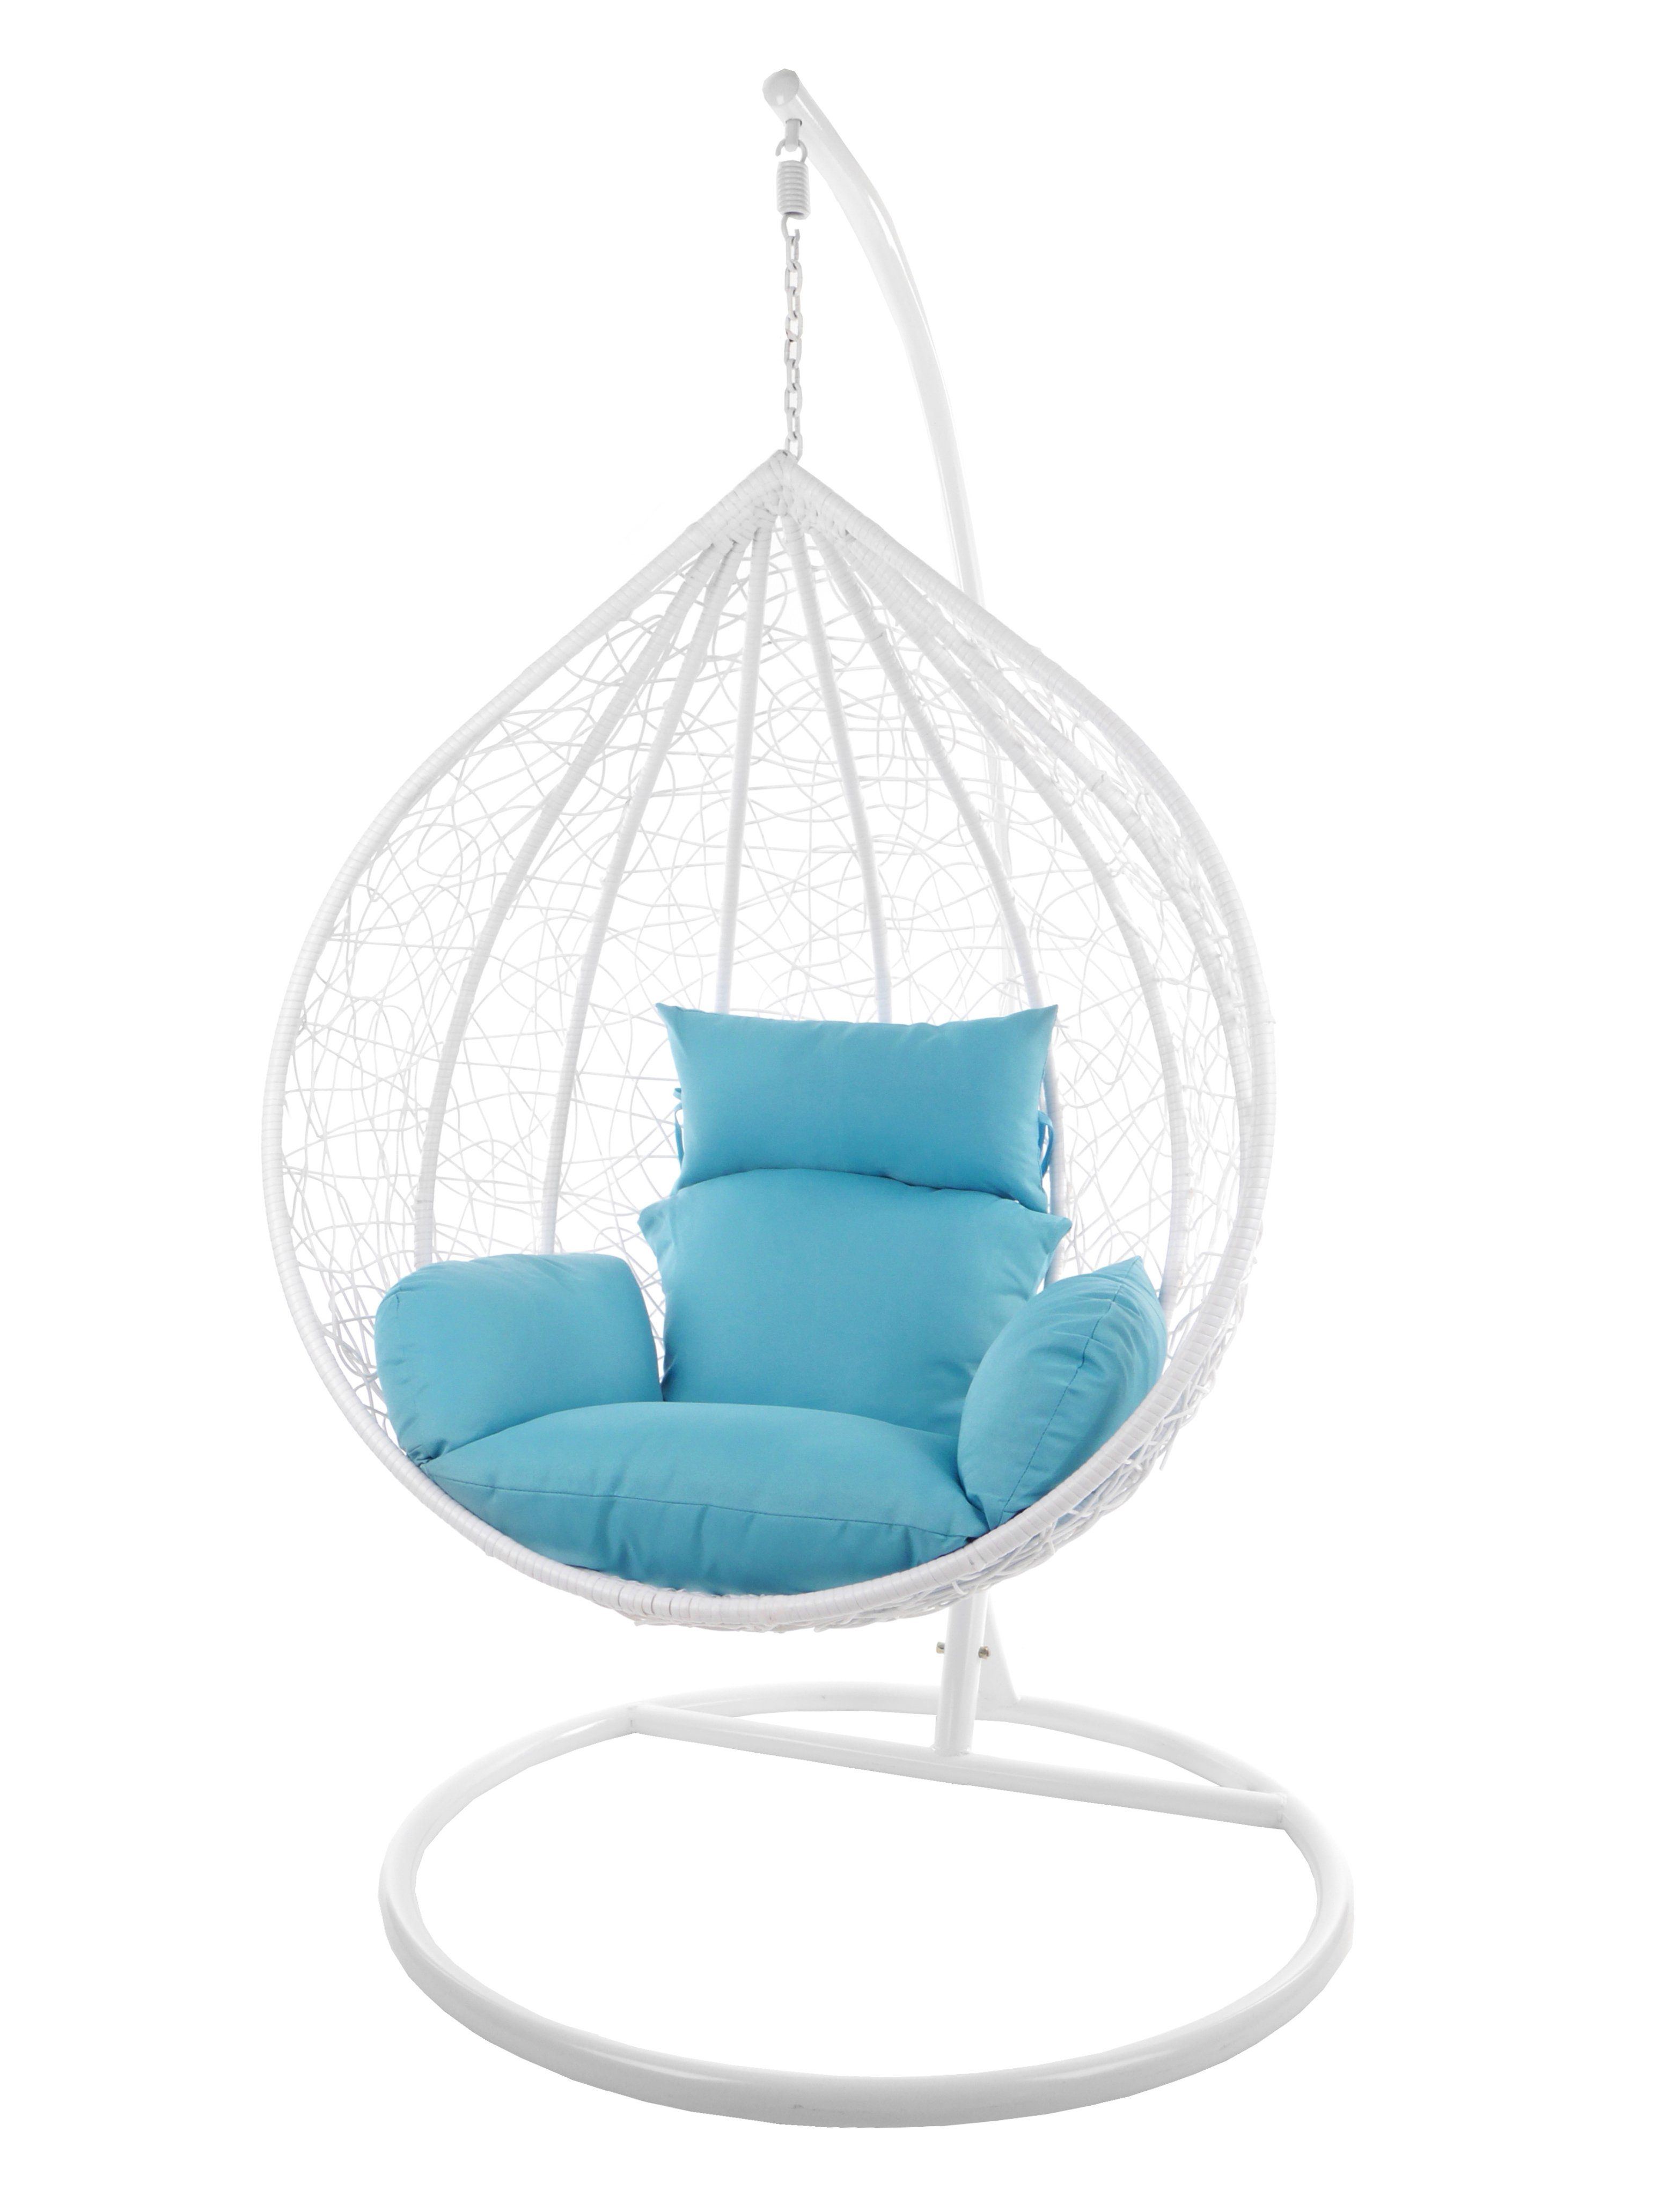 KIDEO hellblau mit Hängesessel Chair, XXL und (5050 Swing großer weiß, Loungemöbel, MANACOR Hängesessel skyblue) weiß Hängesessel Kissen, Gestell